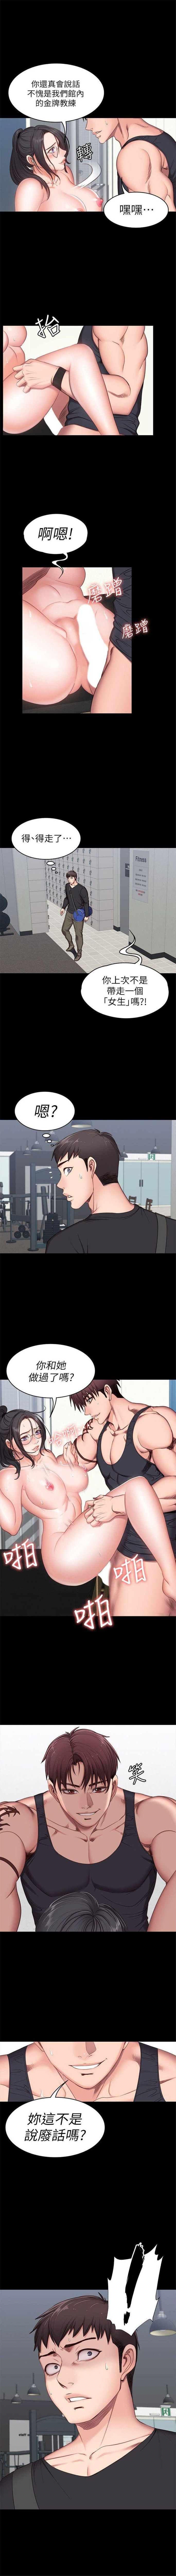 健身教练1-10 中文翻译 （更新中） 30